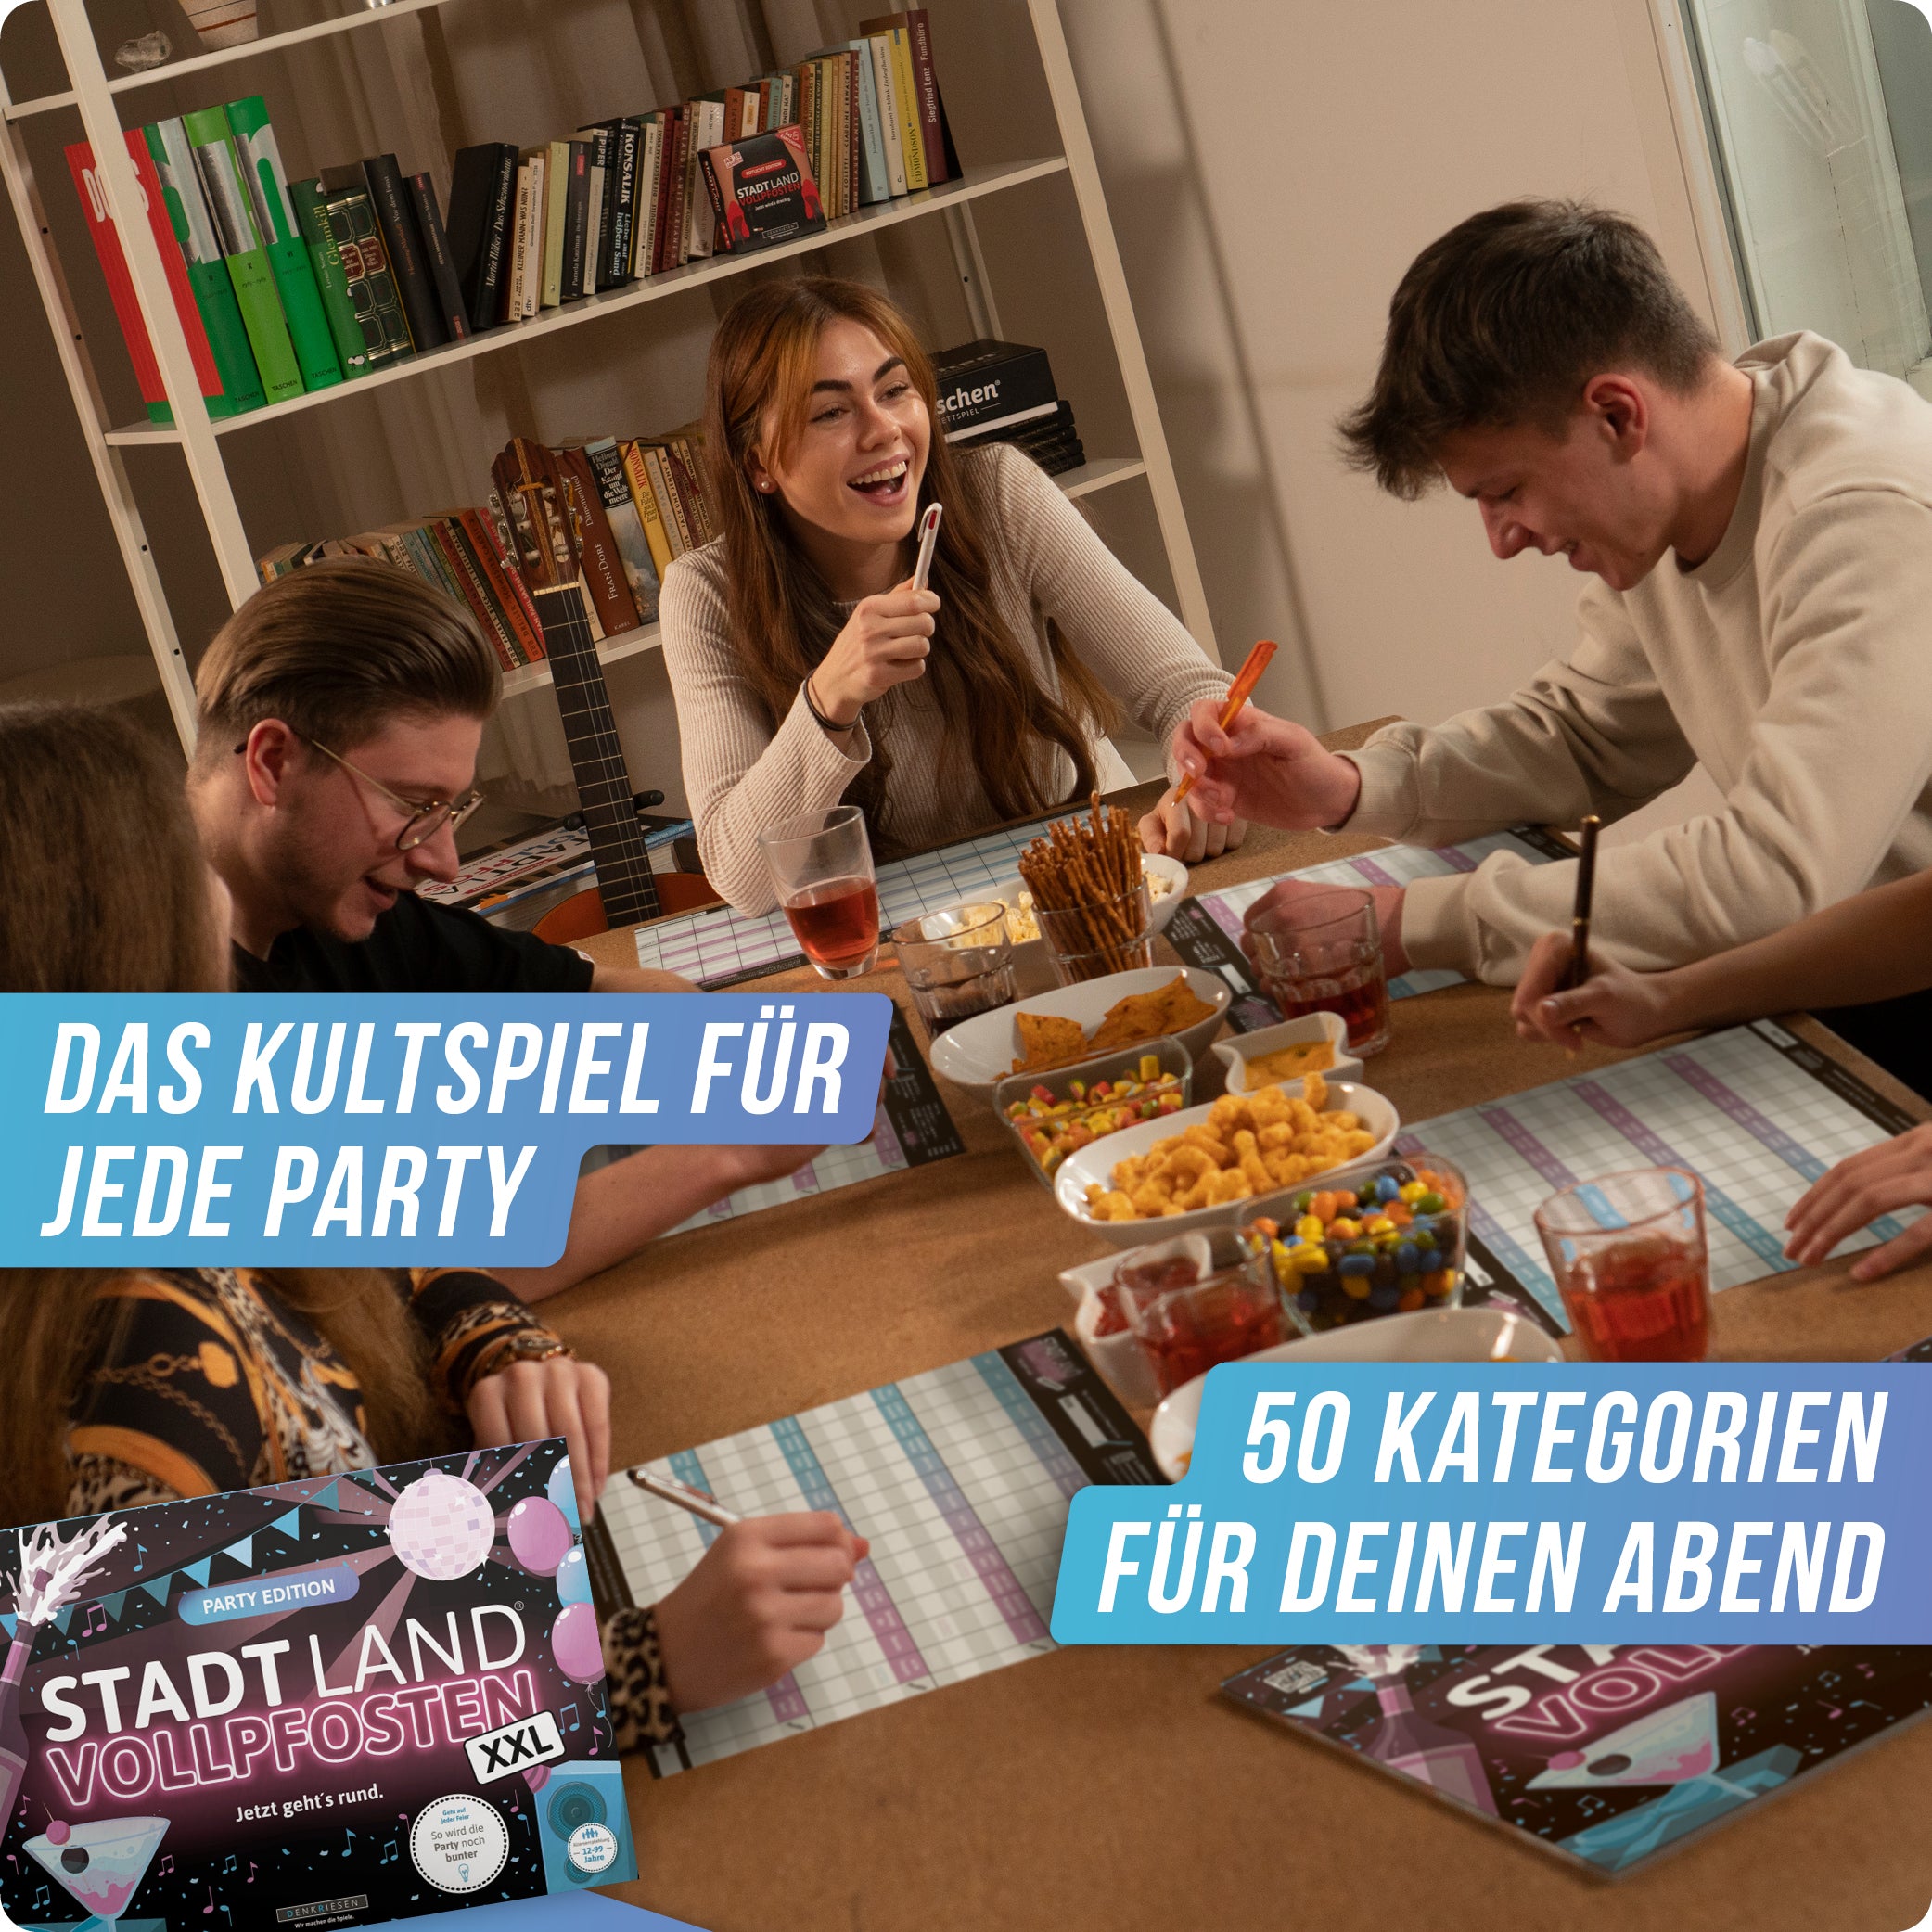 Stadt Land Vollpfosten® Party Edition – "Jetzt geht's rund." | A3 Spielblock